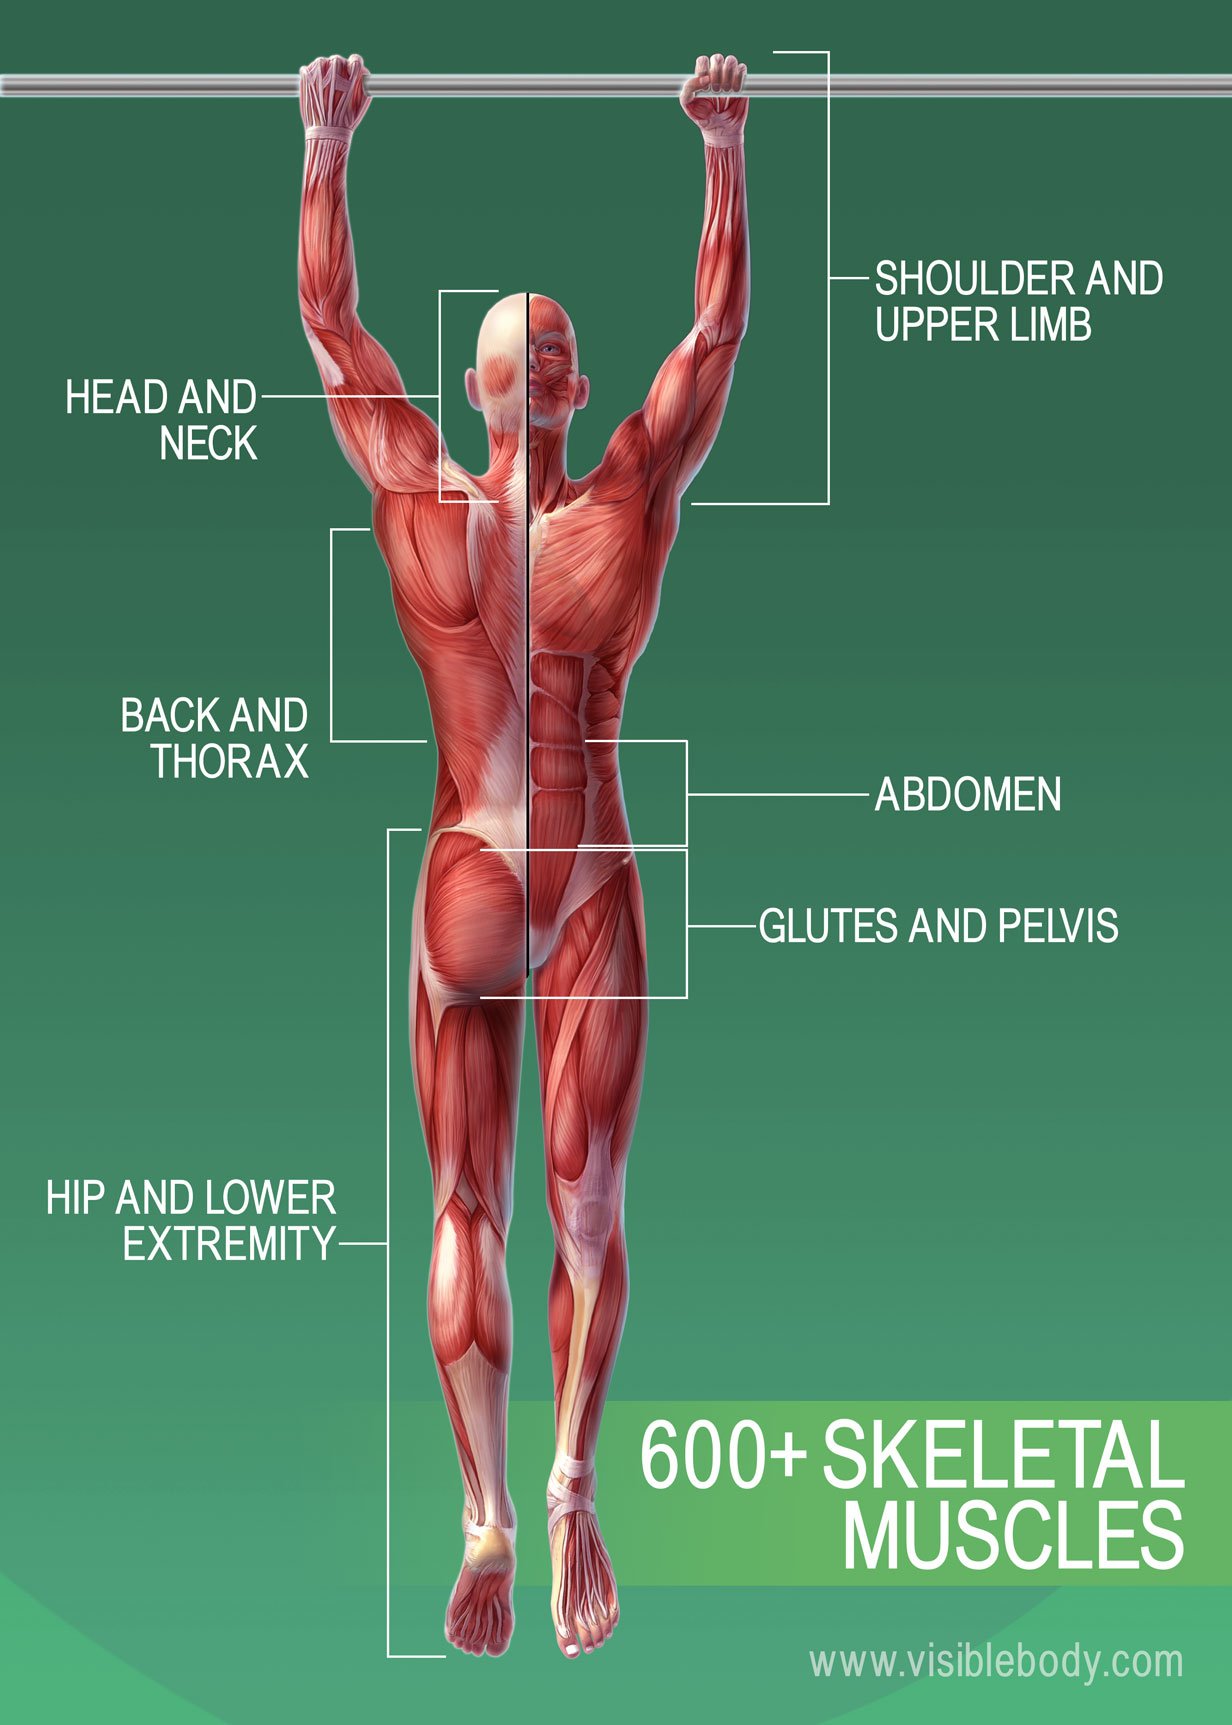 3B-600+-Skeletal-Muscles